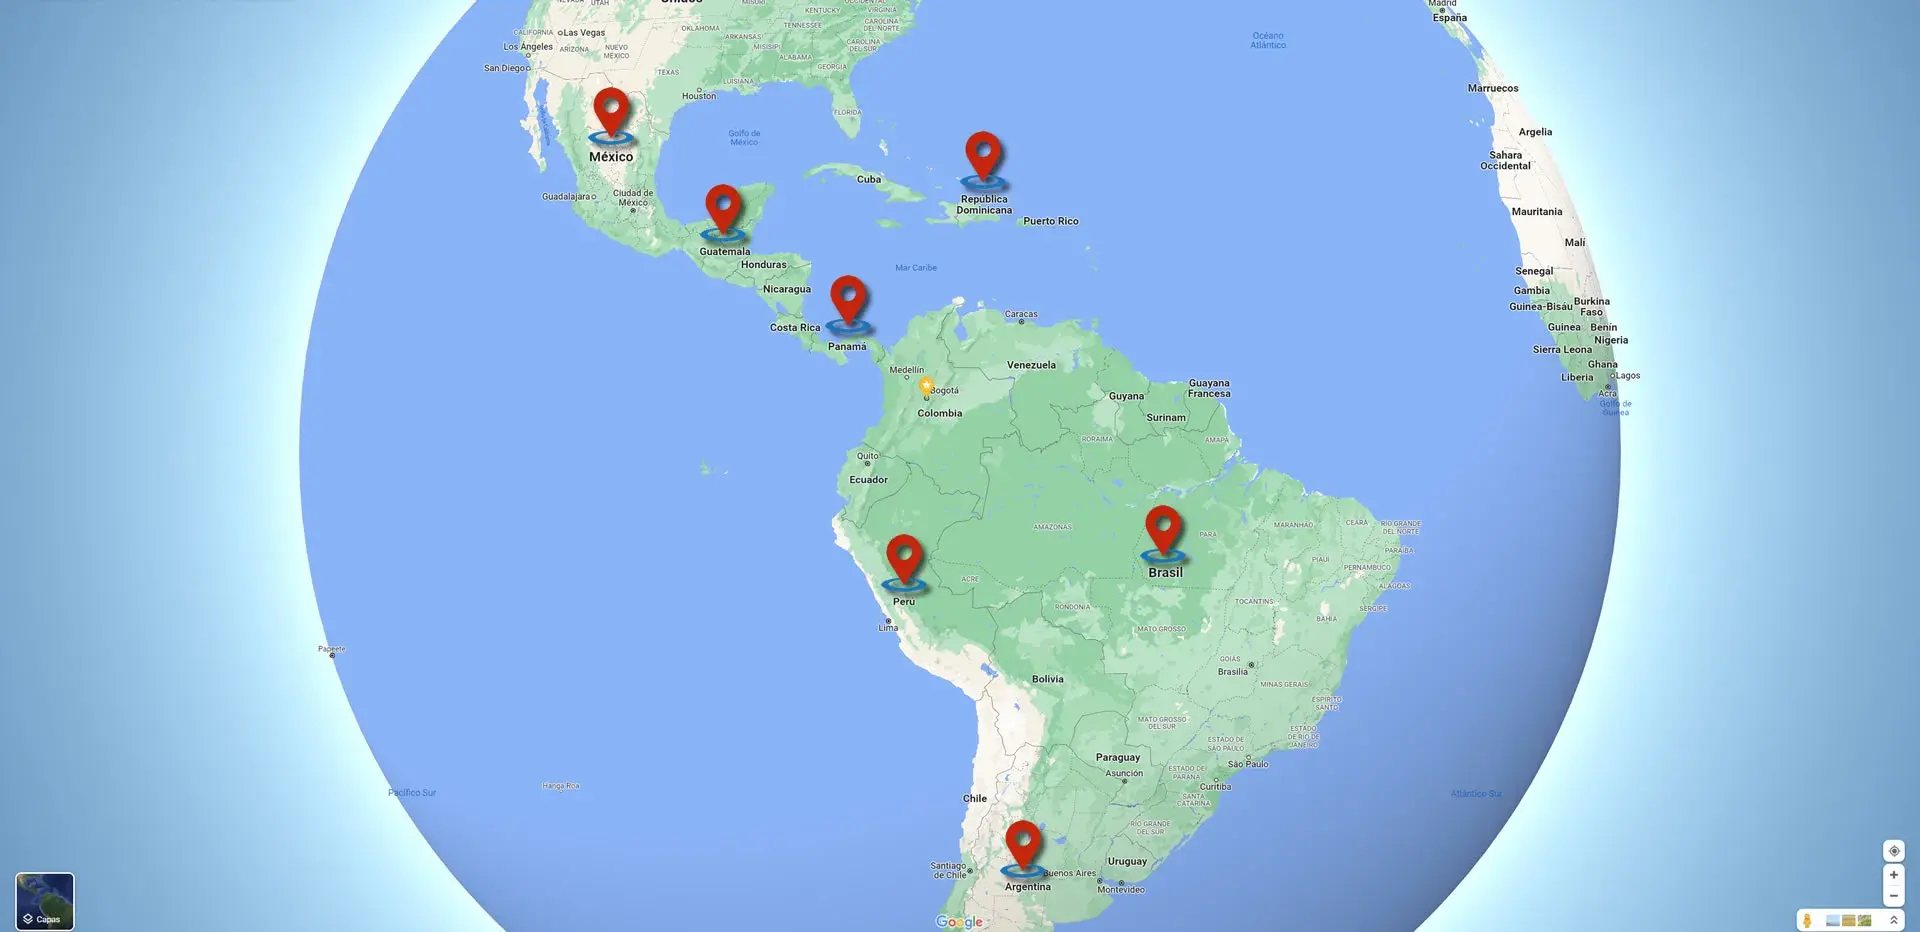 Mapa de américa indicando los países en los que Antorami ha prestado servicios